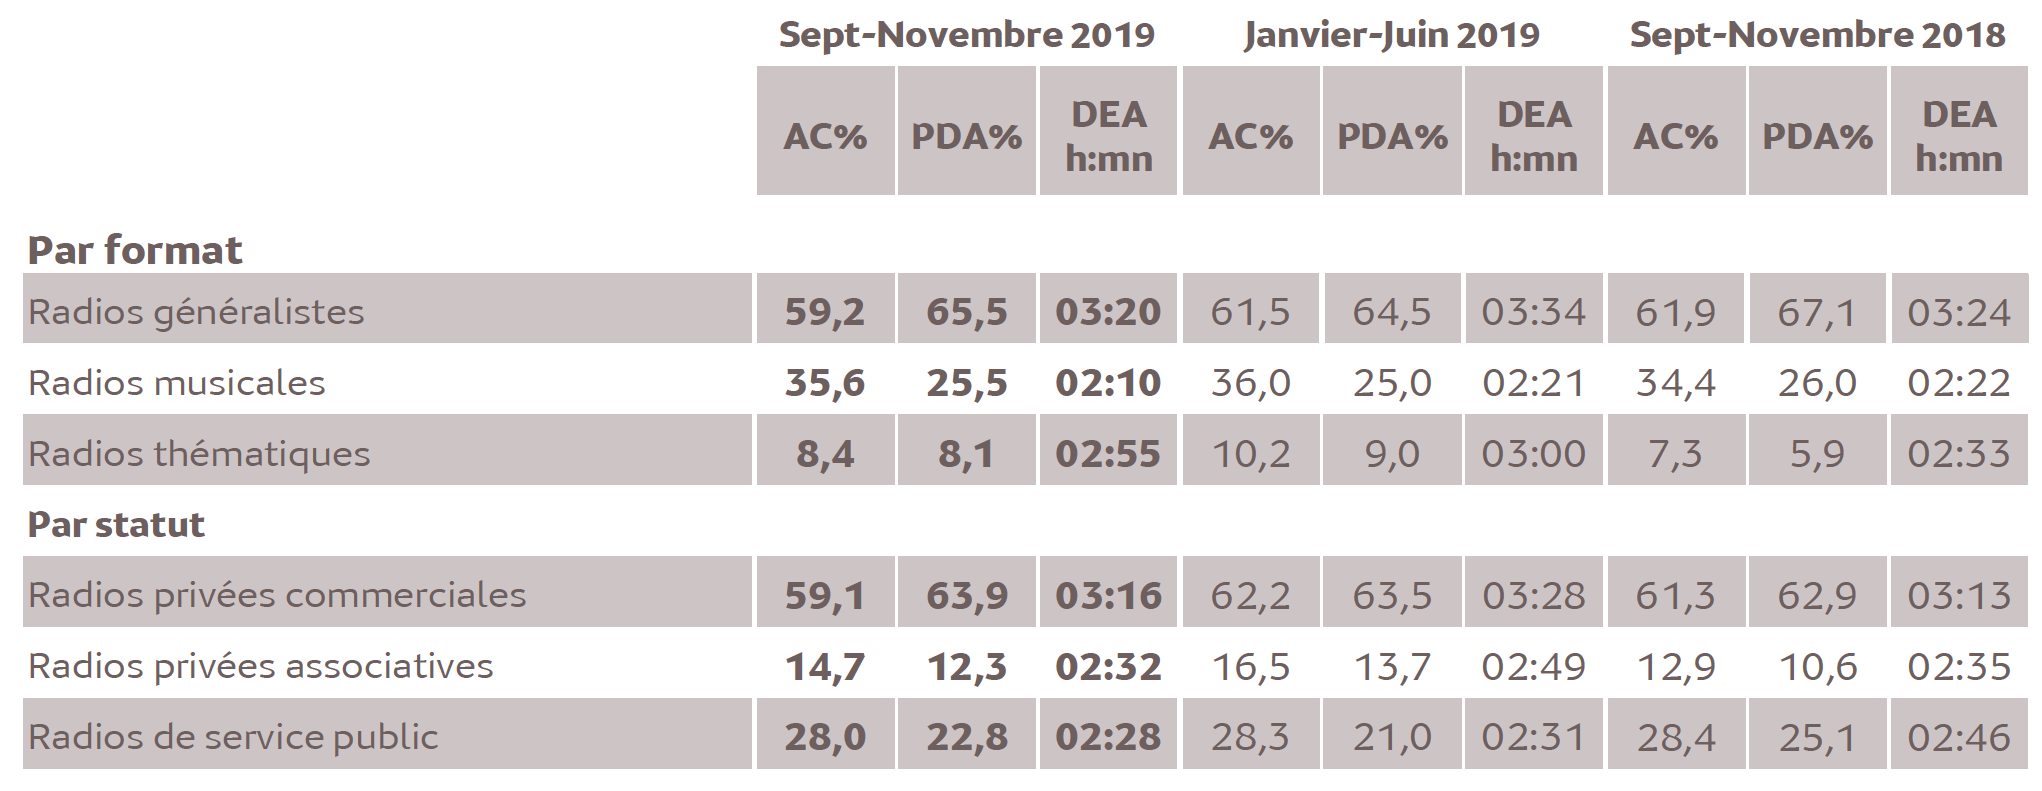 Source : Médiamétrie -Métridom -Septembre-Novembre 2019 -13 ans et plus -Copyright Médiamétrie -Tous droits réservés